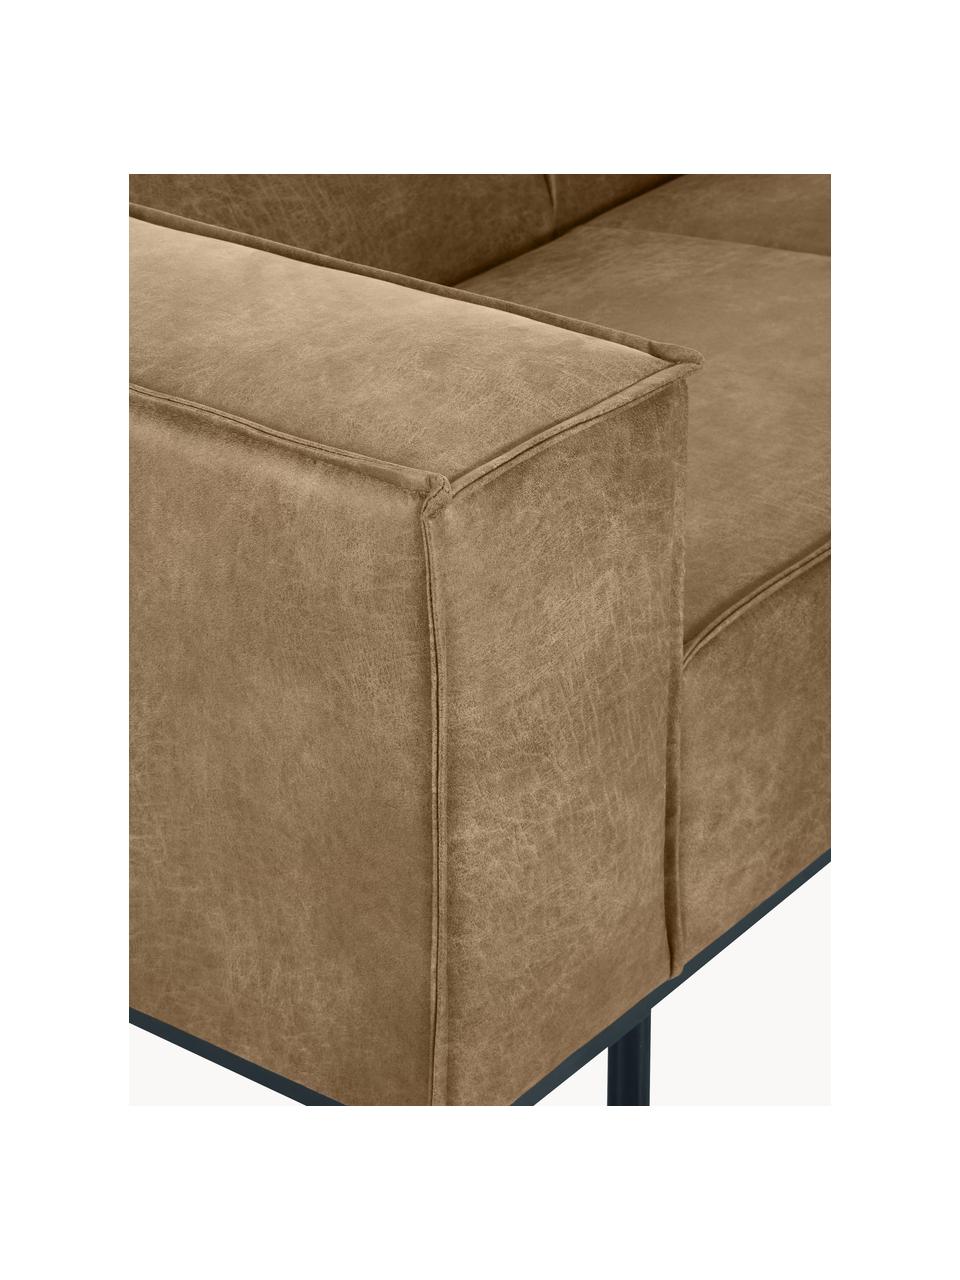 Sofa skórzana z metalowymi nogami Abigail (2-osobowa), Tapicerka: 70% skóra, 30% poliester , Nogi: metal lakierowany, Koniakowy, S 190 x G 95 cm